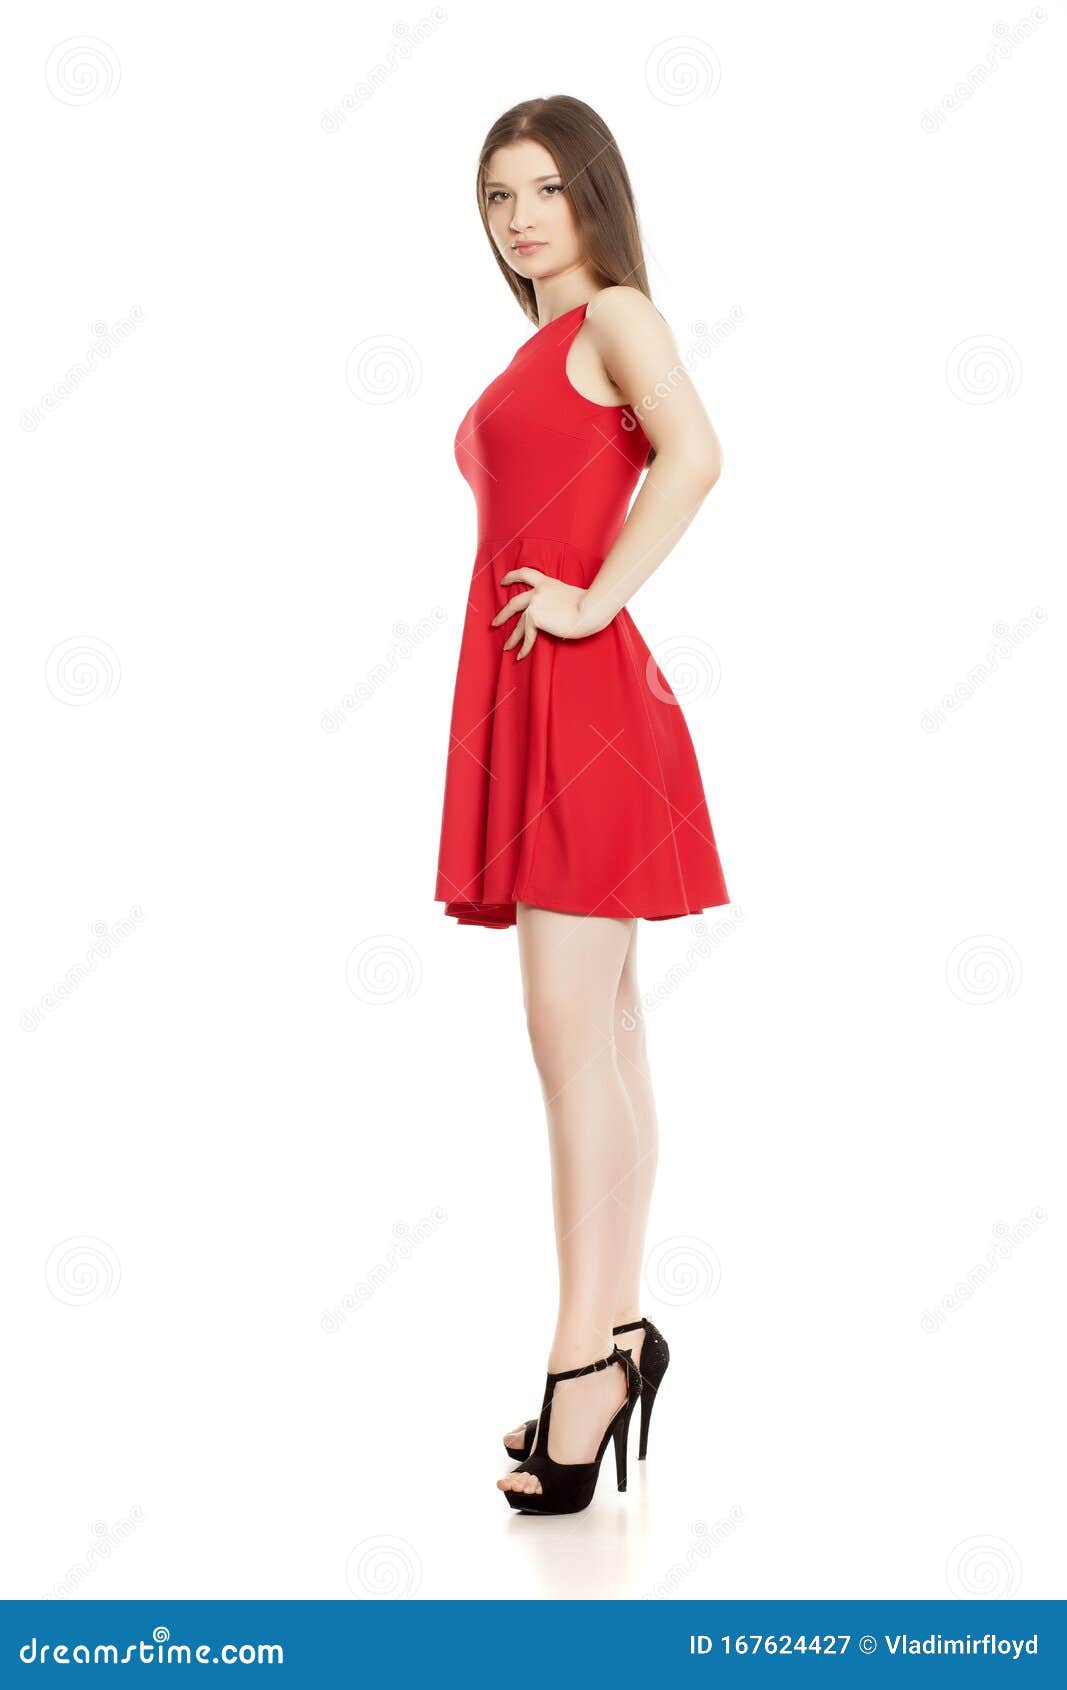 high heels high heels red dress